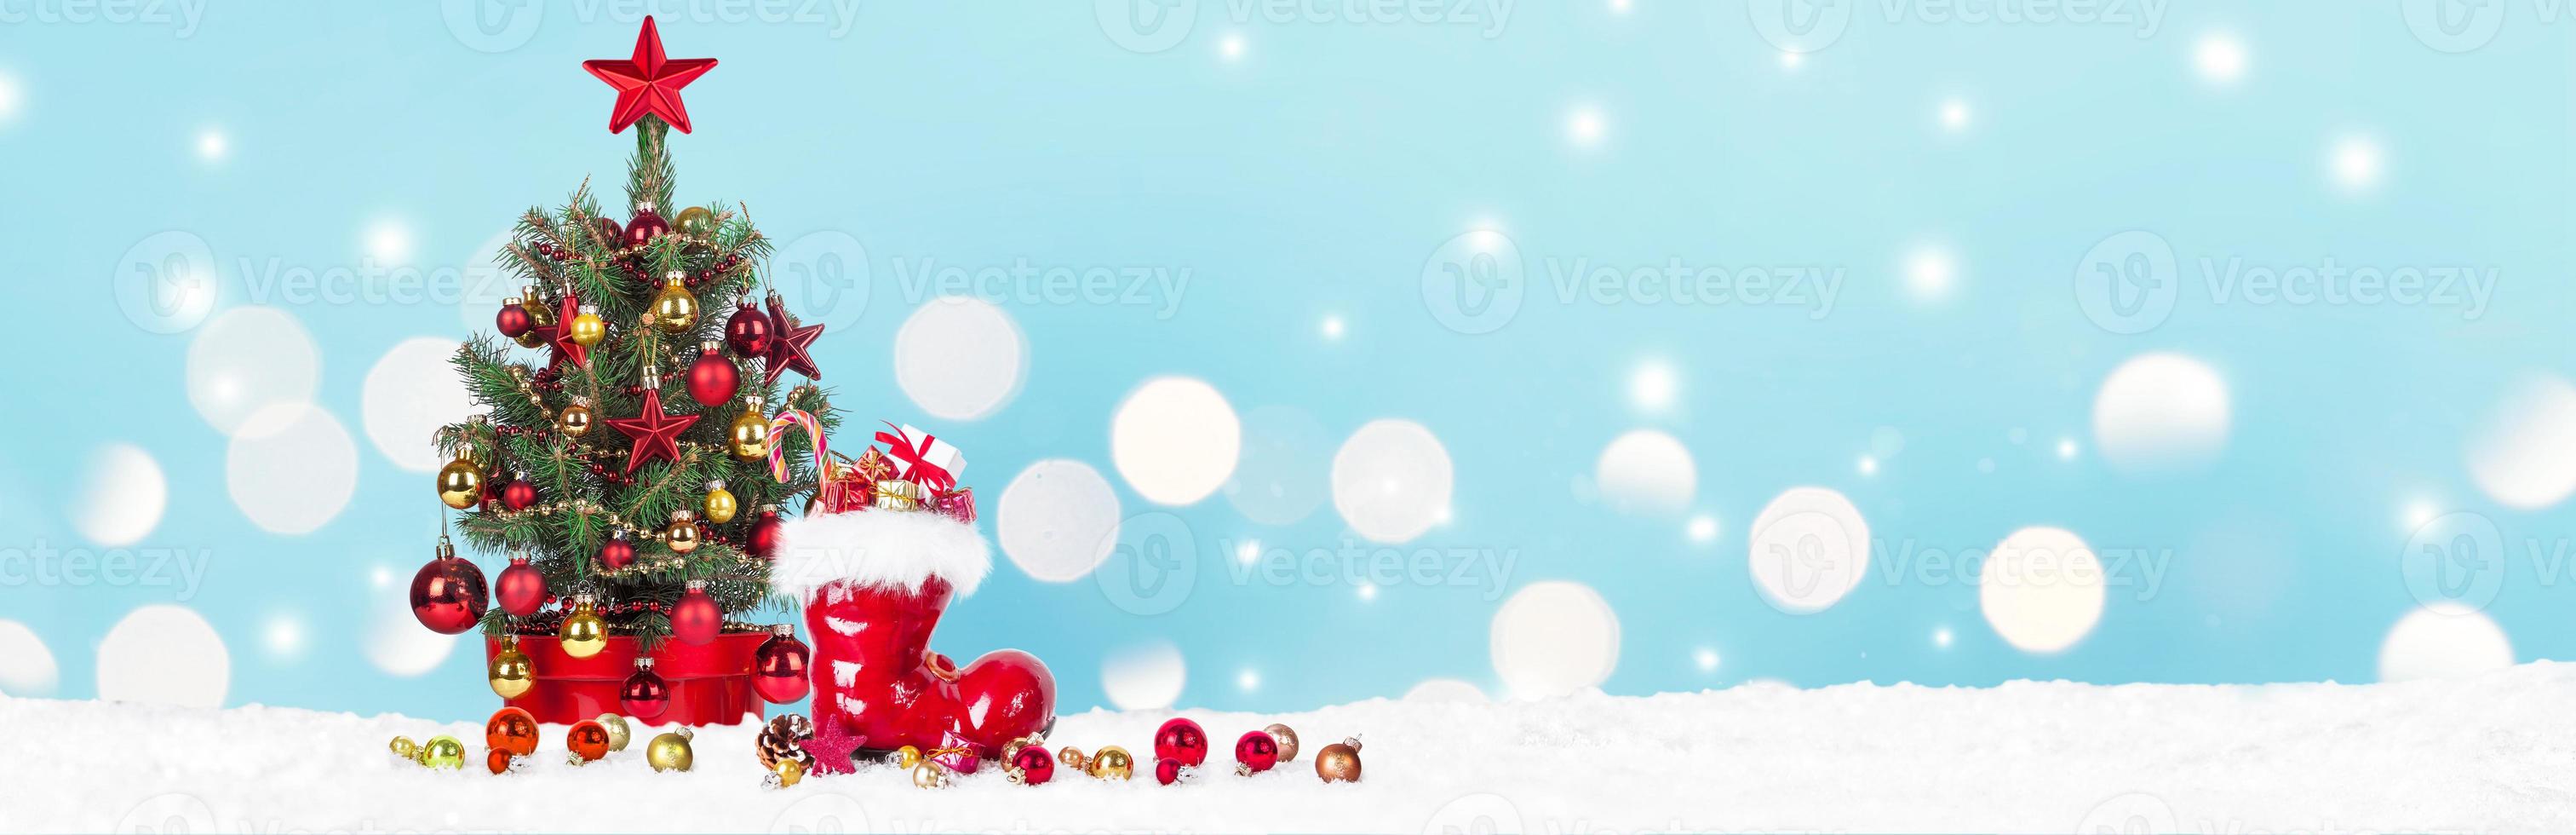 kerstboom met decoratie op een winterse achtergrond. foto